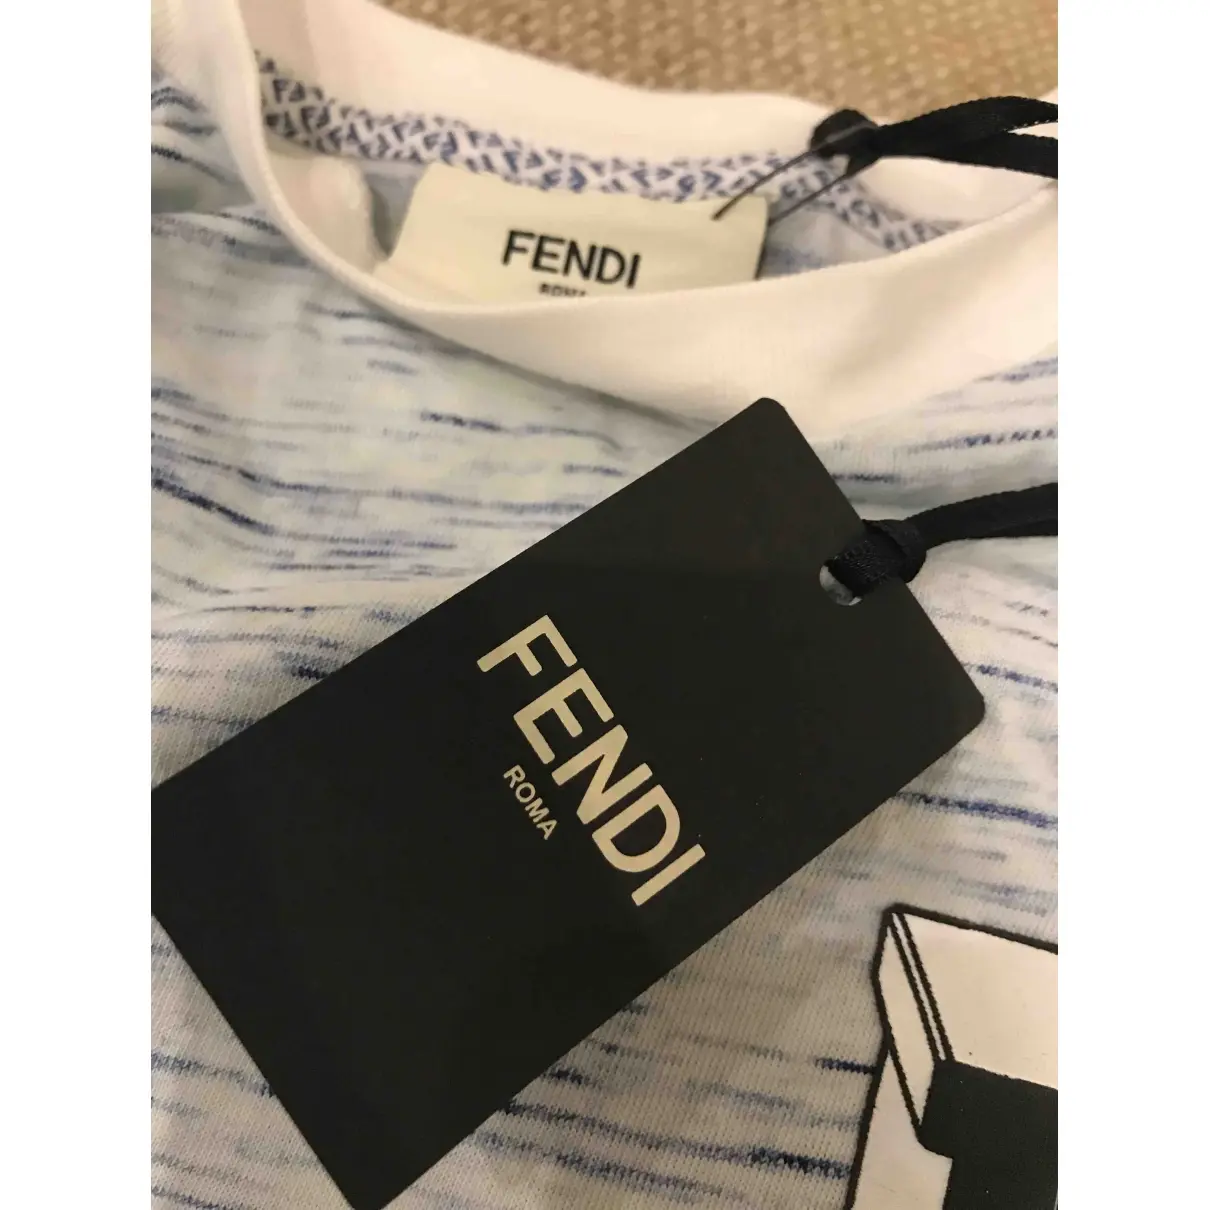 Buy Fendi Top online